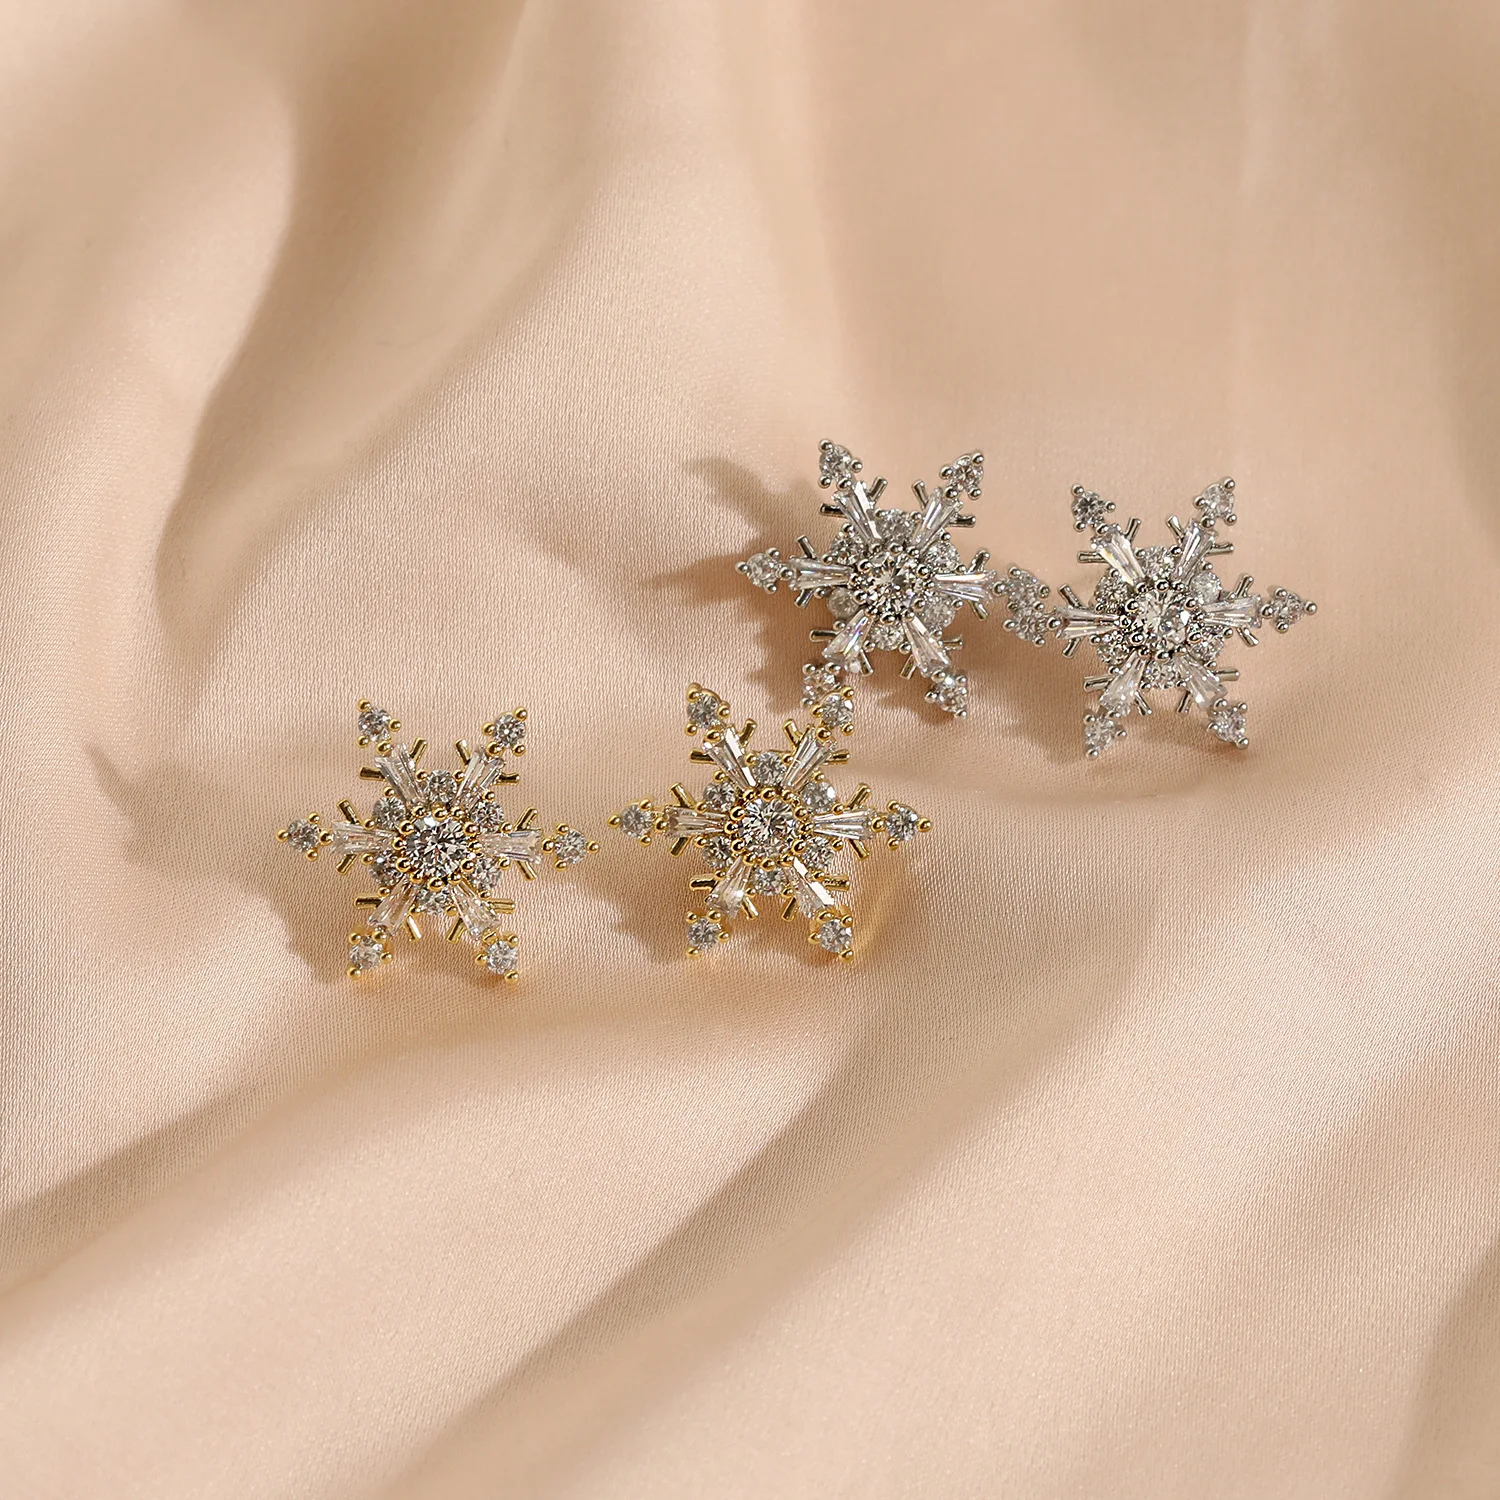 

Minimalist ECO Brass 14KGold/Rhod. W/Zircon Korea Earring Jewelry For Women W/S925 Silver Ear Needle Stud Earring HYACINTH Hot